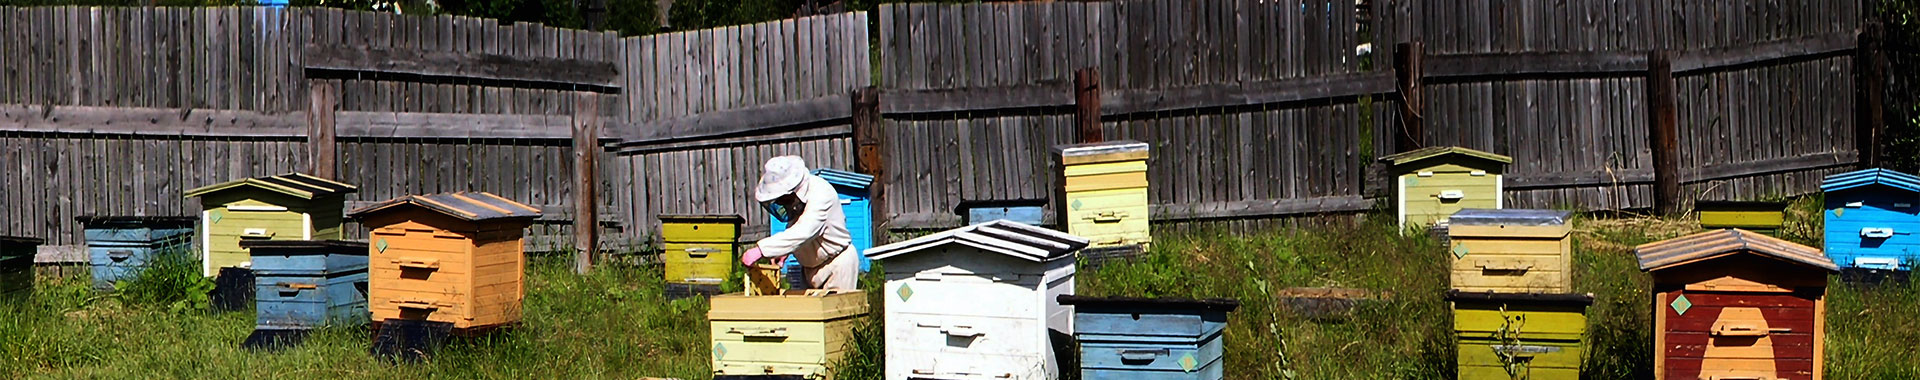 Imker bei der Arbeit an bunten Bienenstöcken 